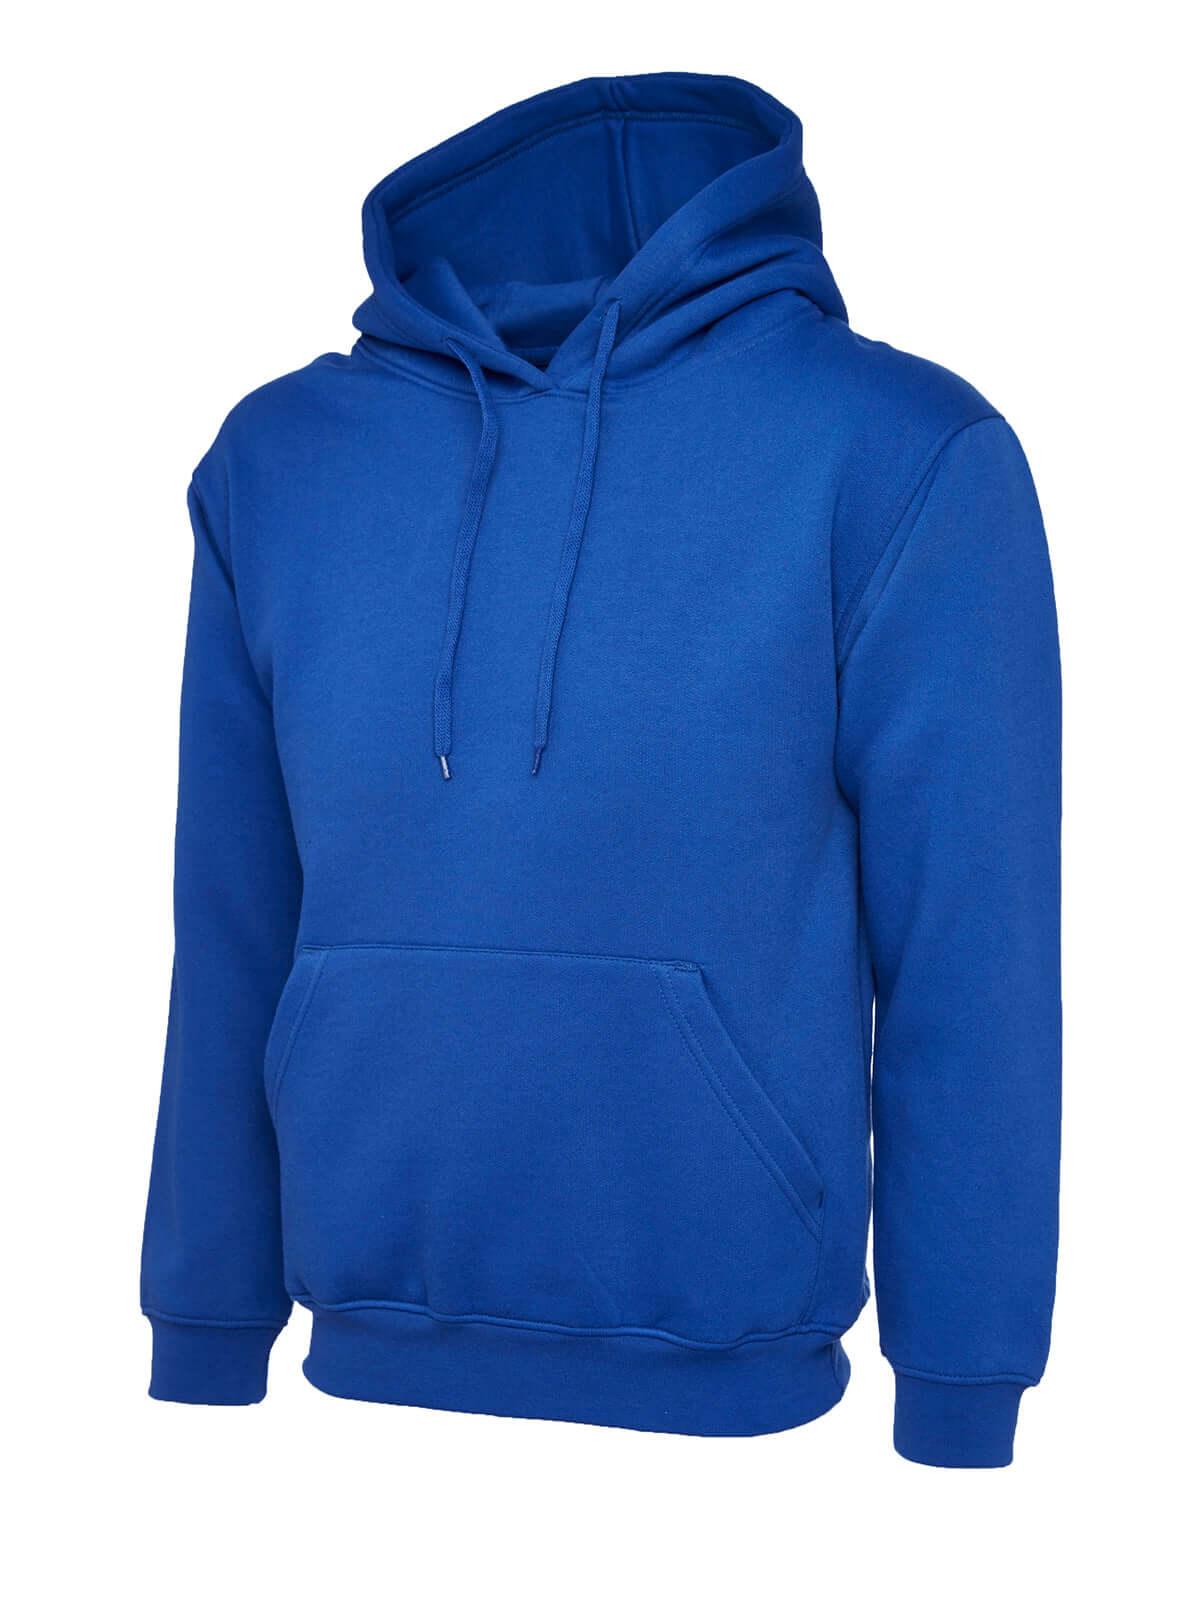 Pegasus Uniform Premium Hooded Sweatshirt - Royal Blue